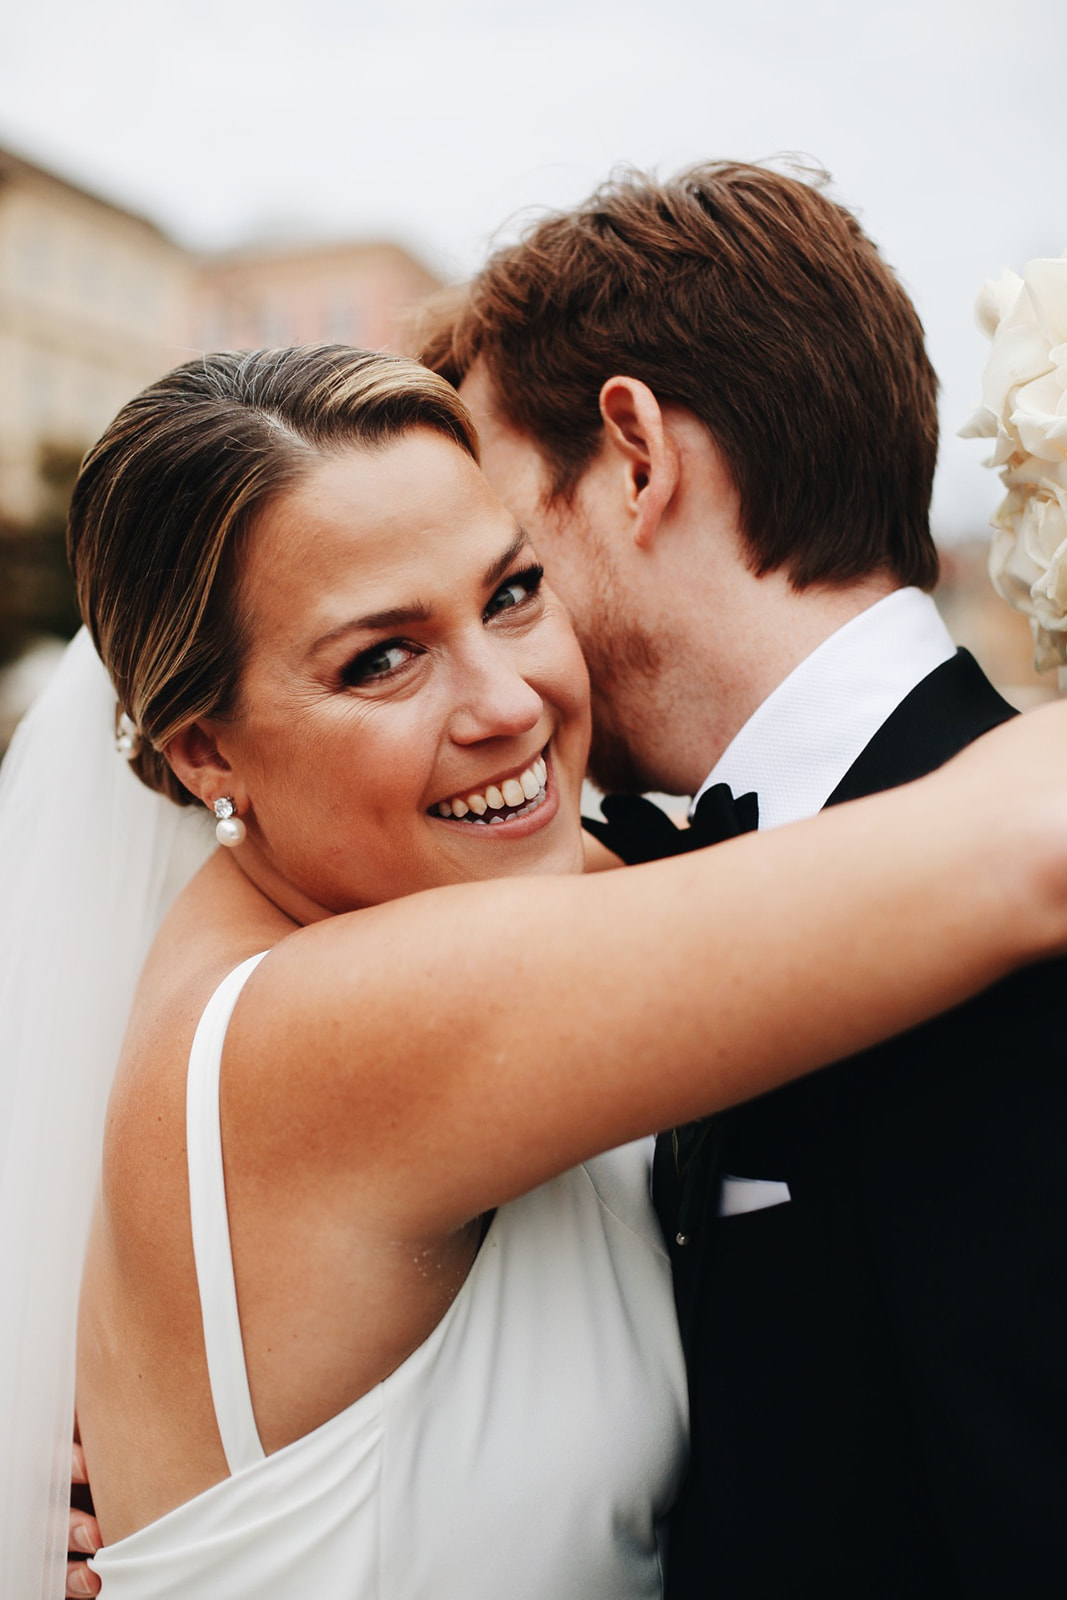 Paula & Andrew - amerykański ślub w Polsce | Portfolio Bogna Bojanowska Wedding Planner